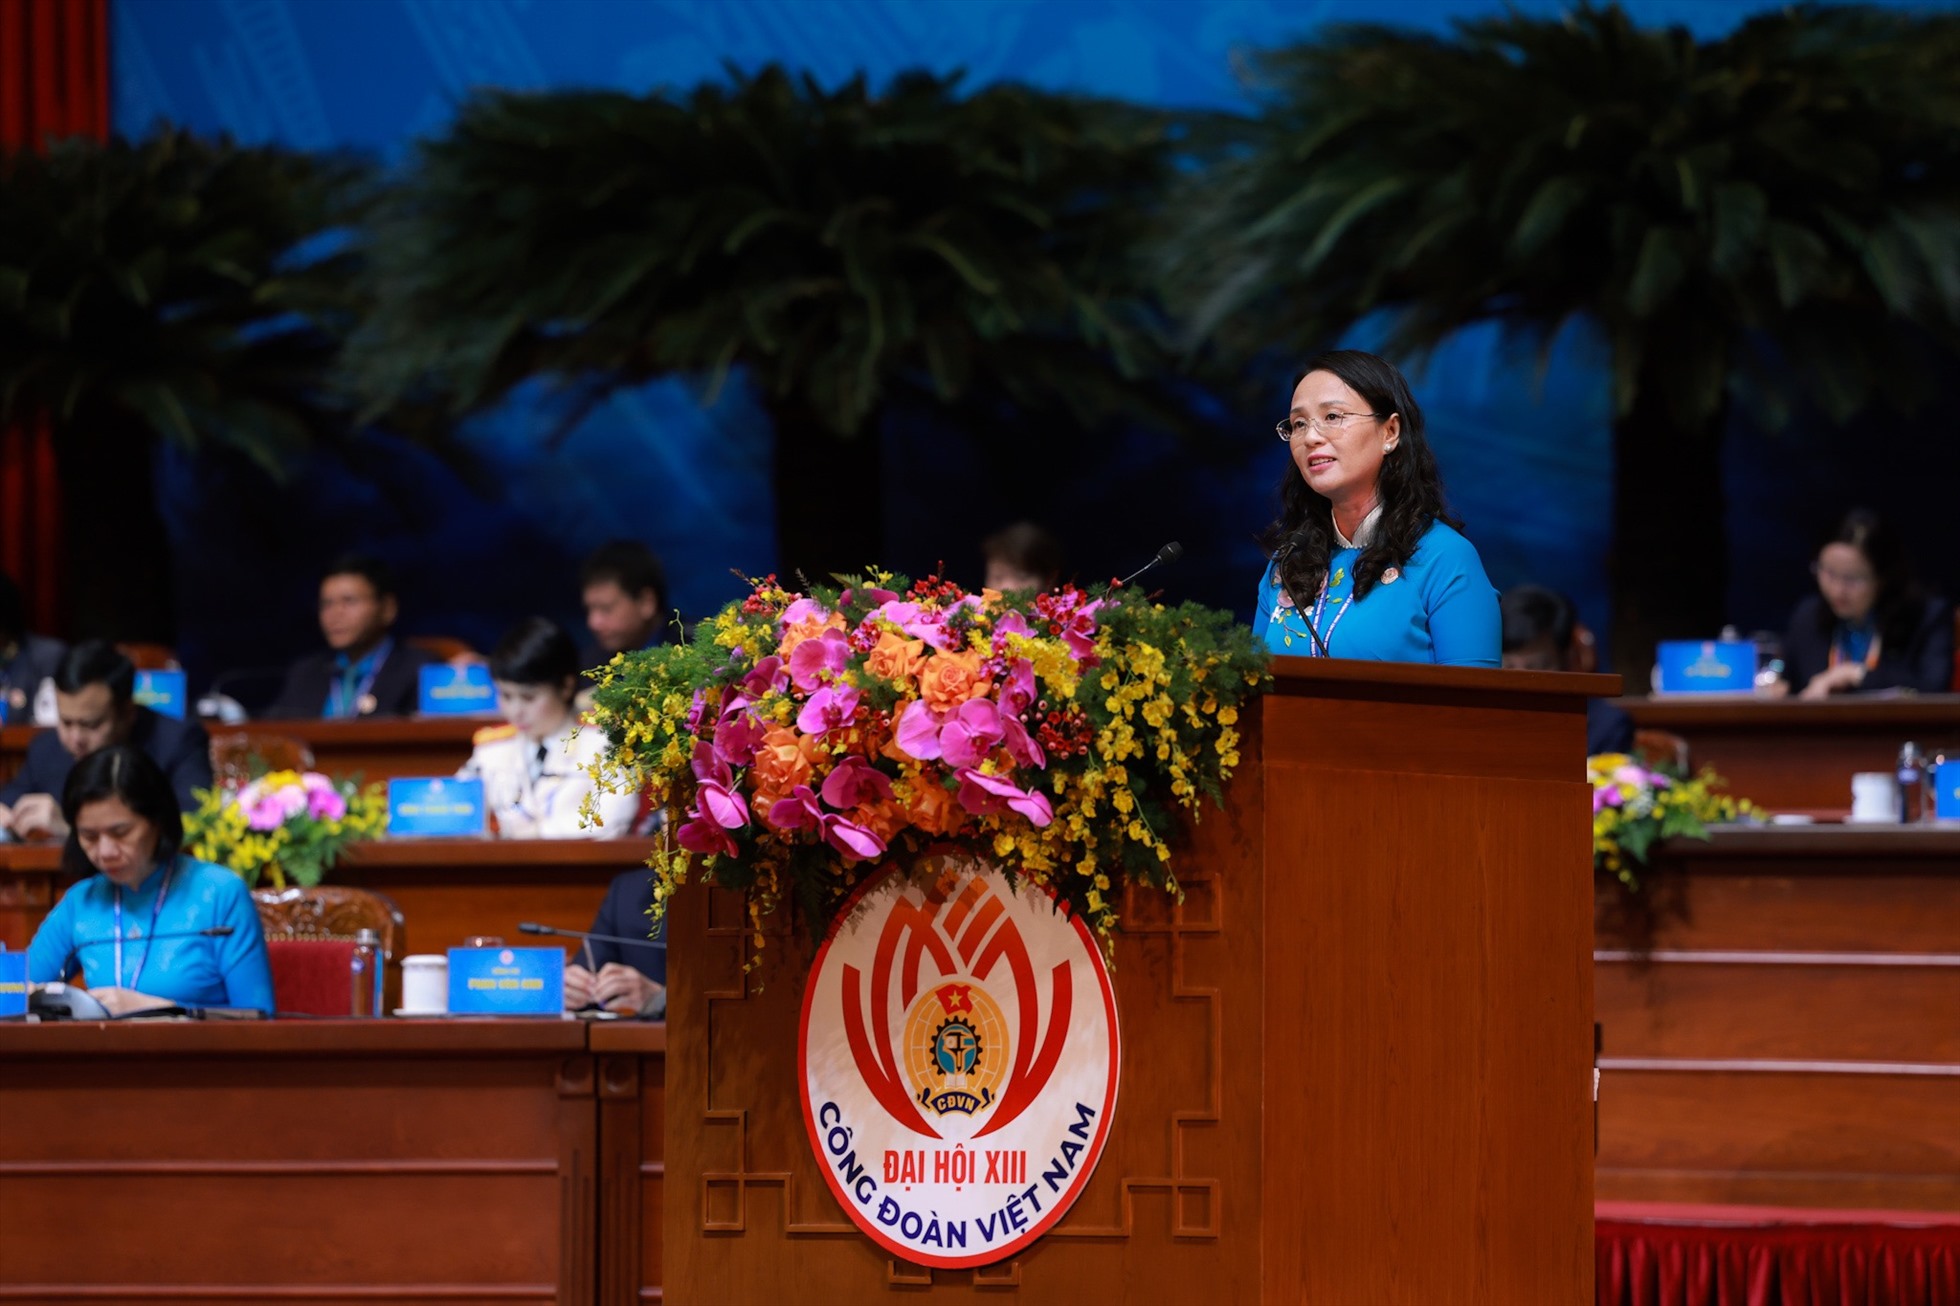 Bà Lê Thị Sương Mai - Chủ tịch Liên đoàn Lao động Thành phố Cần Thơ phát biểu. Ảnh: Đình Hải